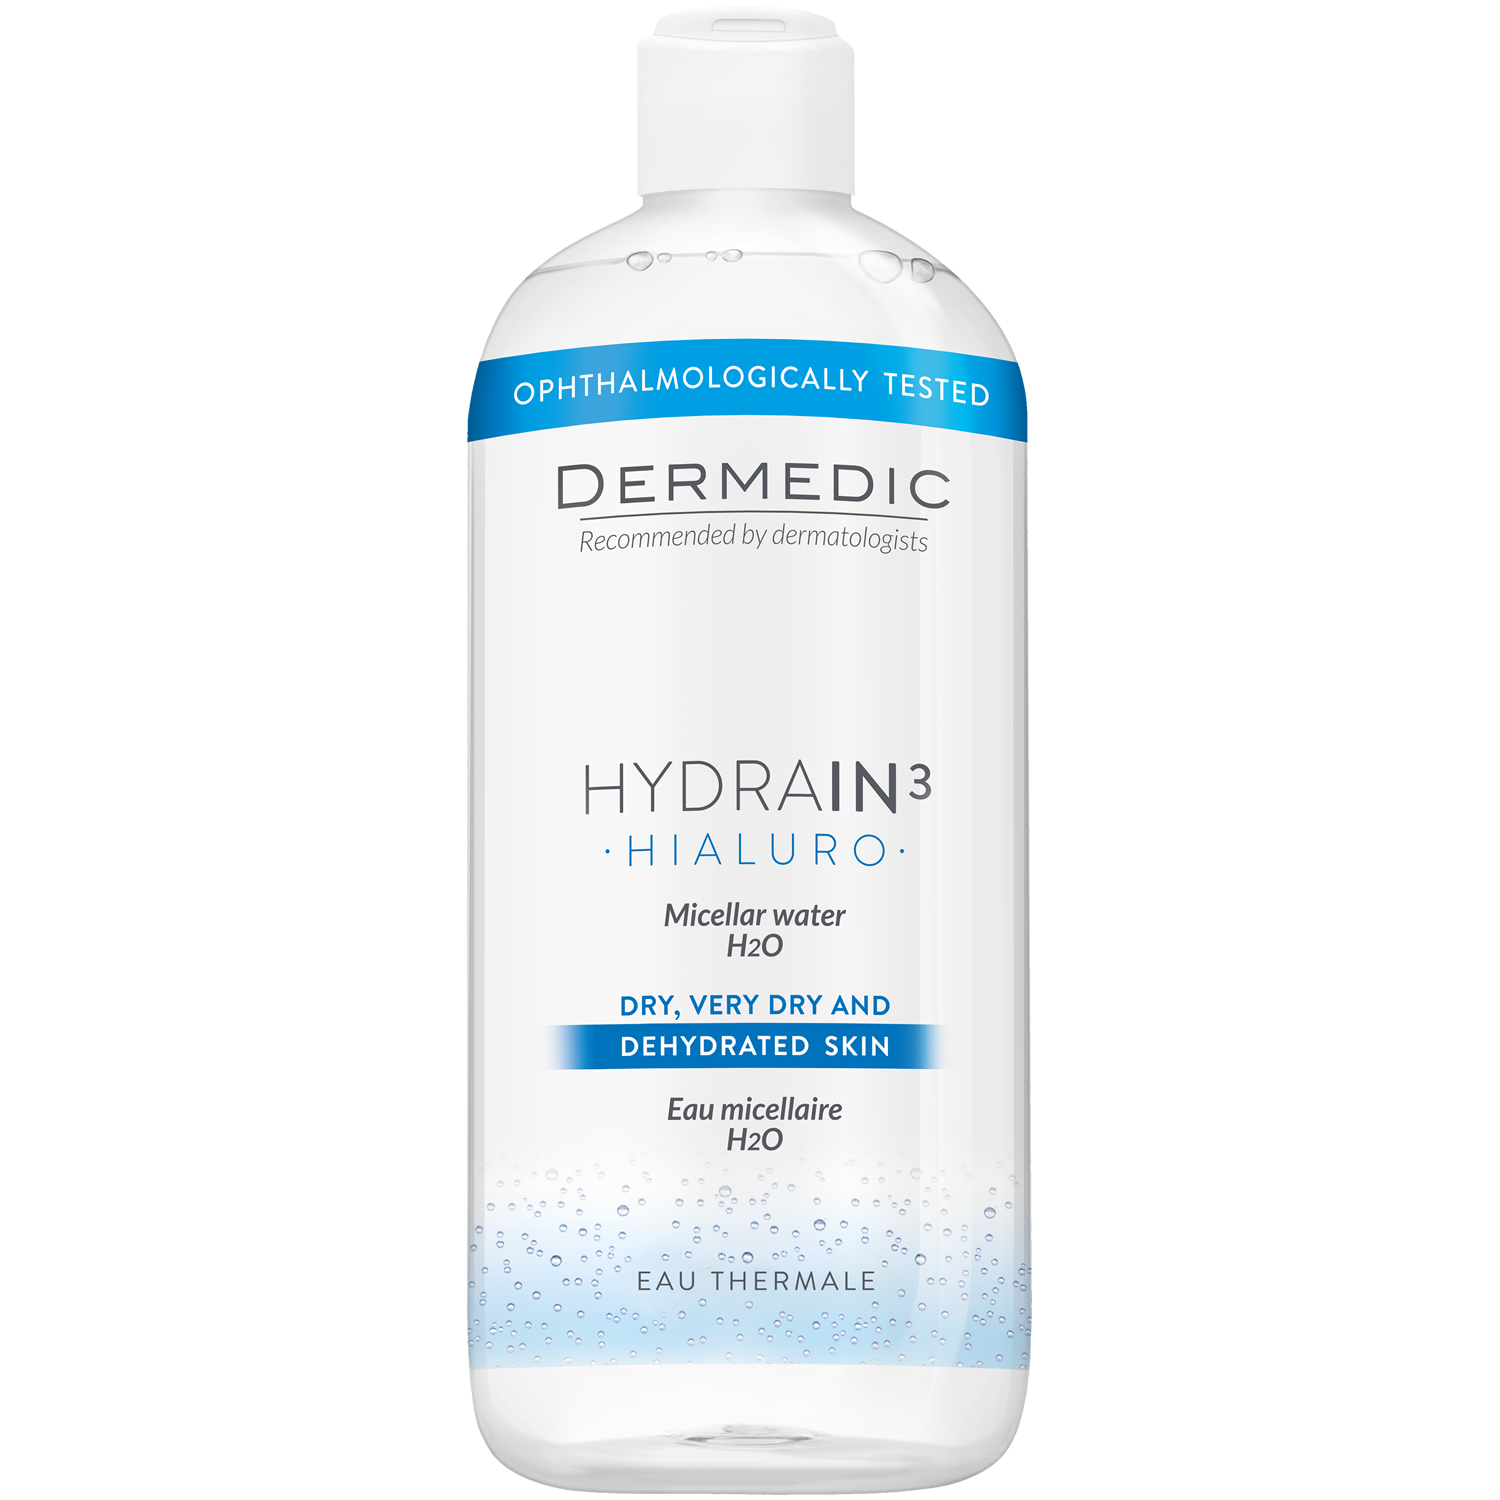 Dermedic Hydrain3 Hialuro мицеллярная вода H2O для лица, 500 мл dermedic мицеллярная вода h2o 500 мл dermedic hydrain3